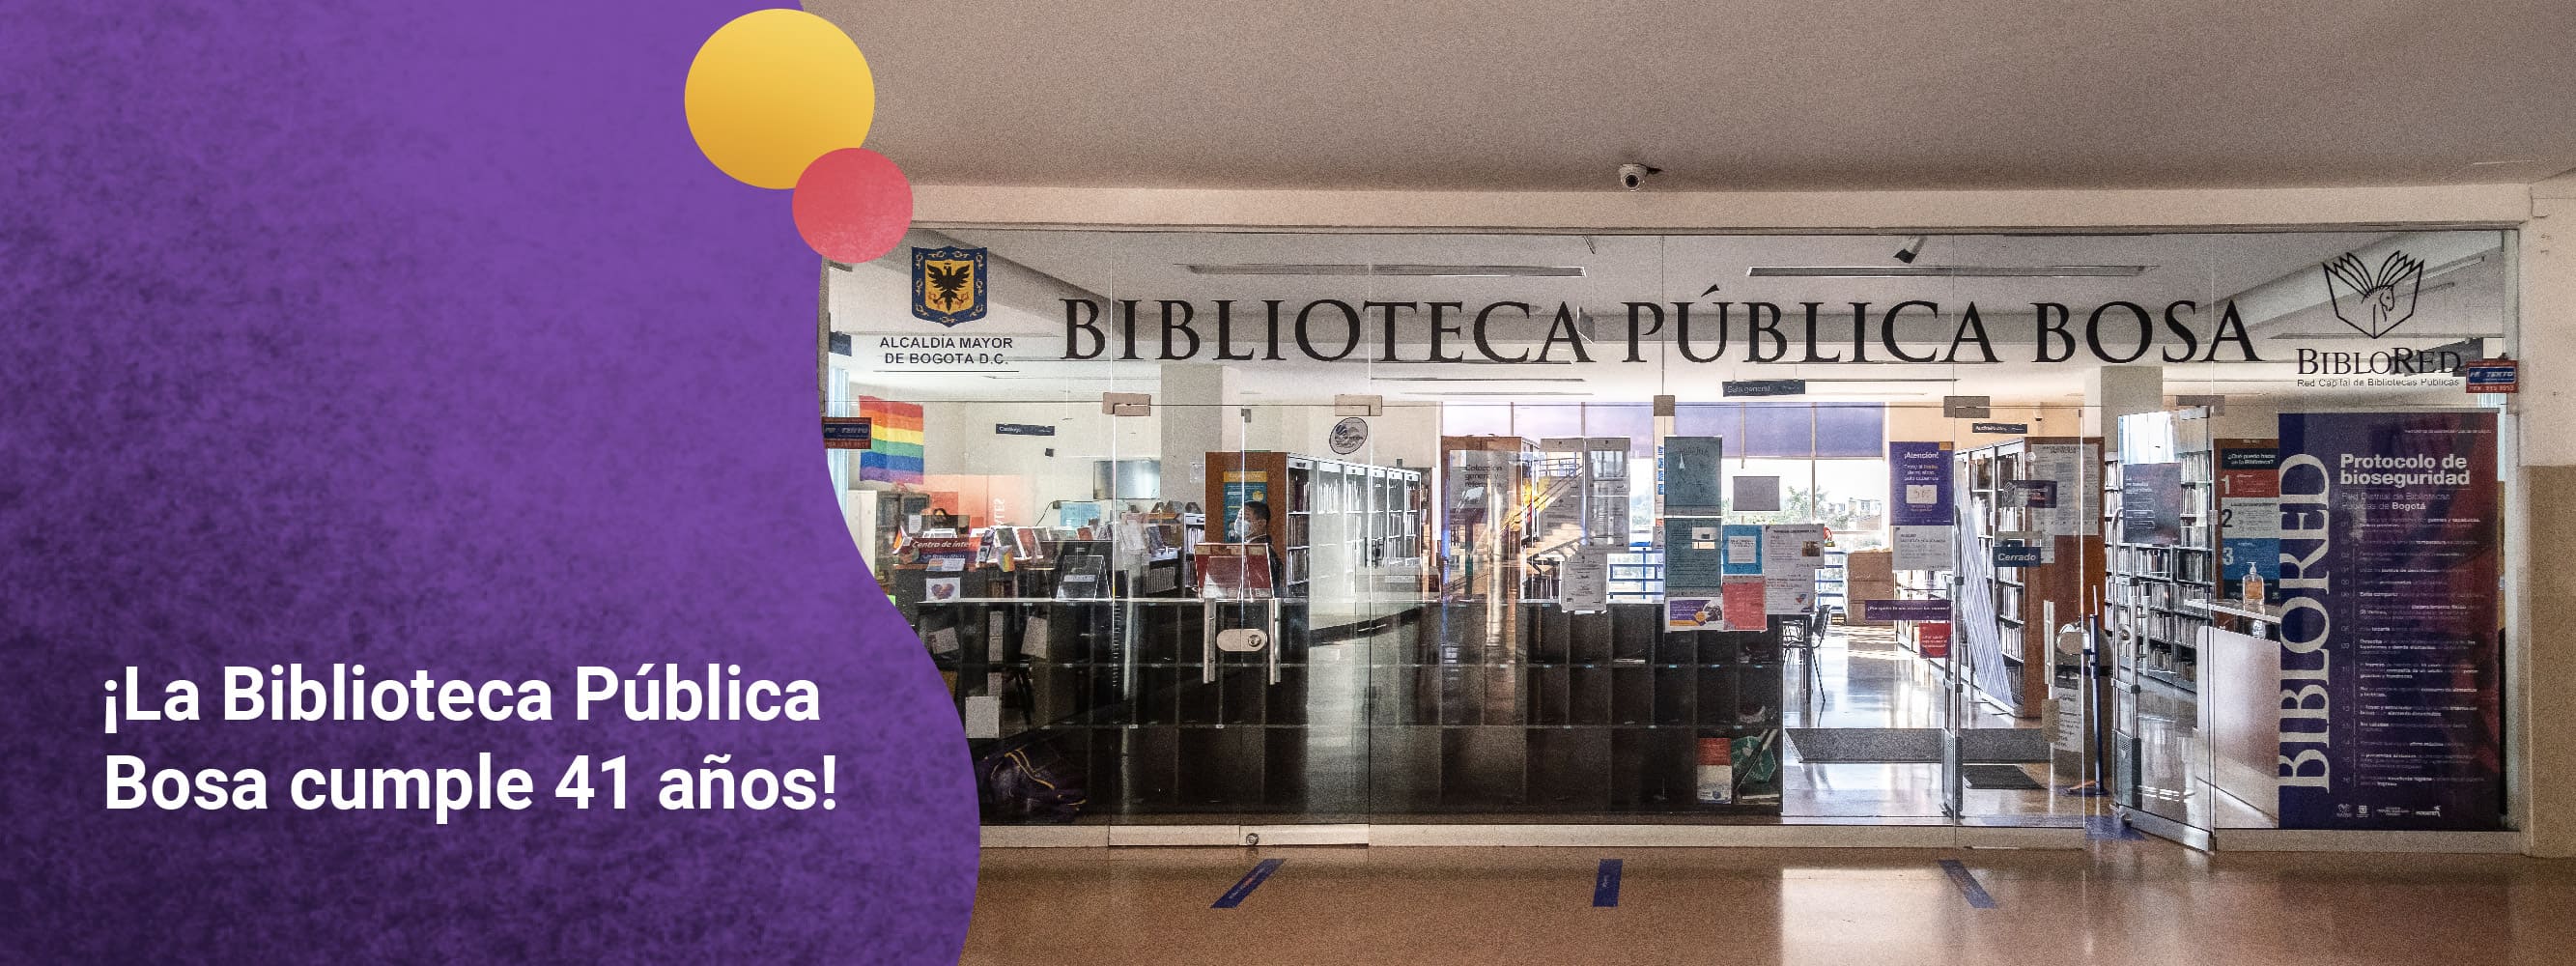 ¡La Biblioteca Pública Bosa cumple 41 años!